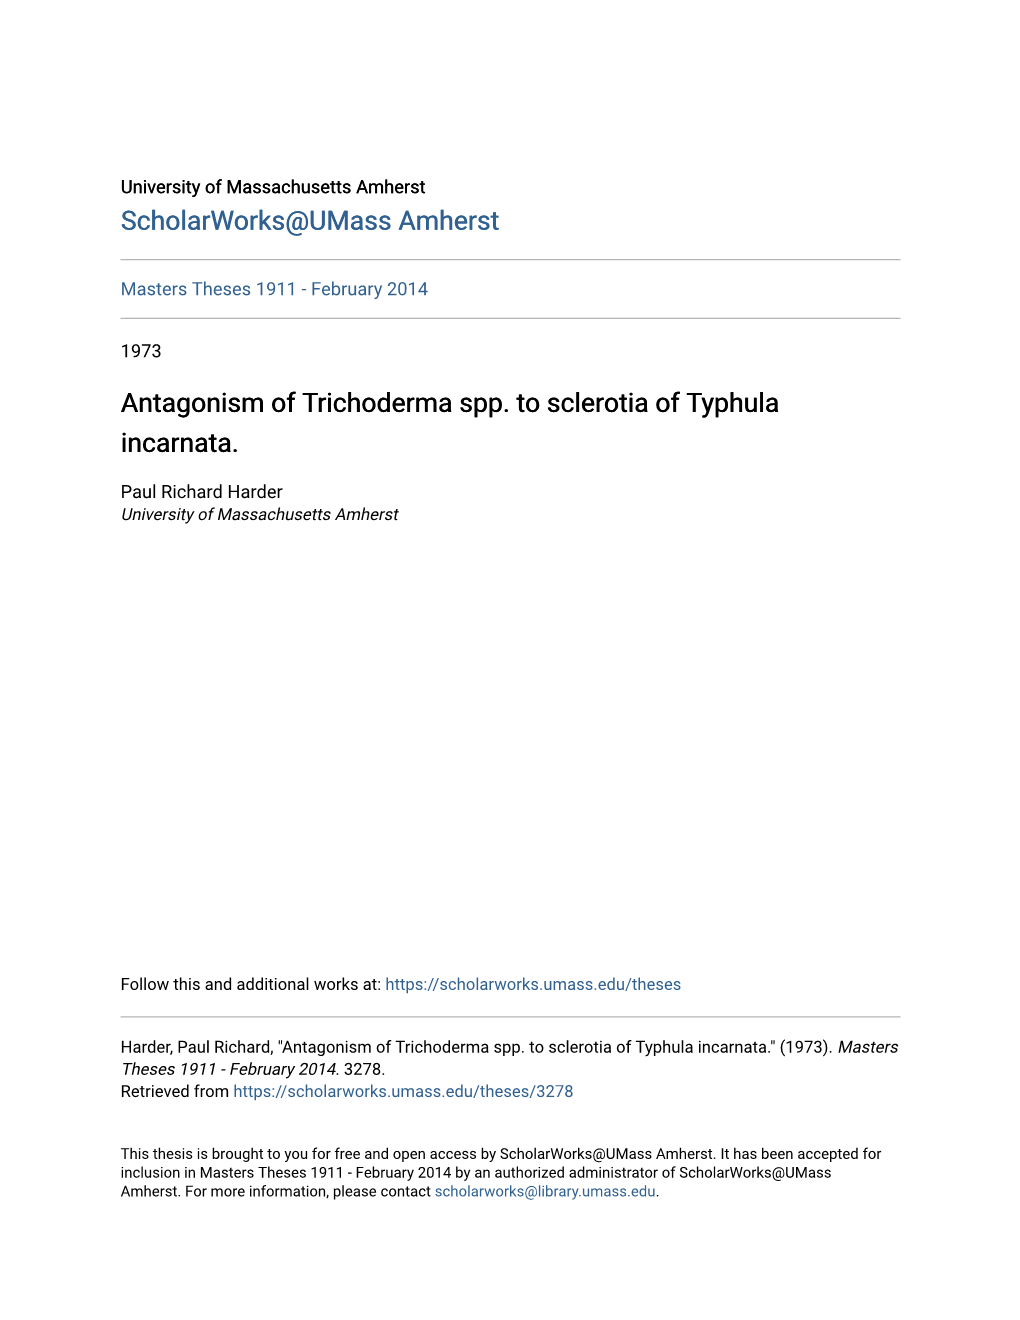 Antagonism of Trichoderma Spp. to Sclerotia of Typhula Incarnata